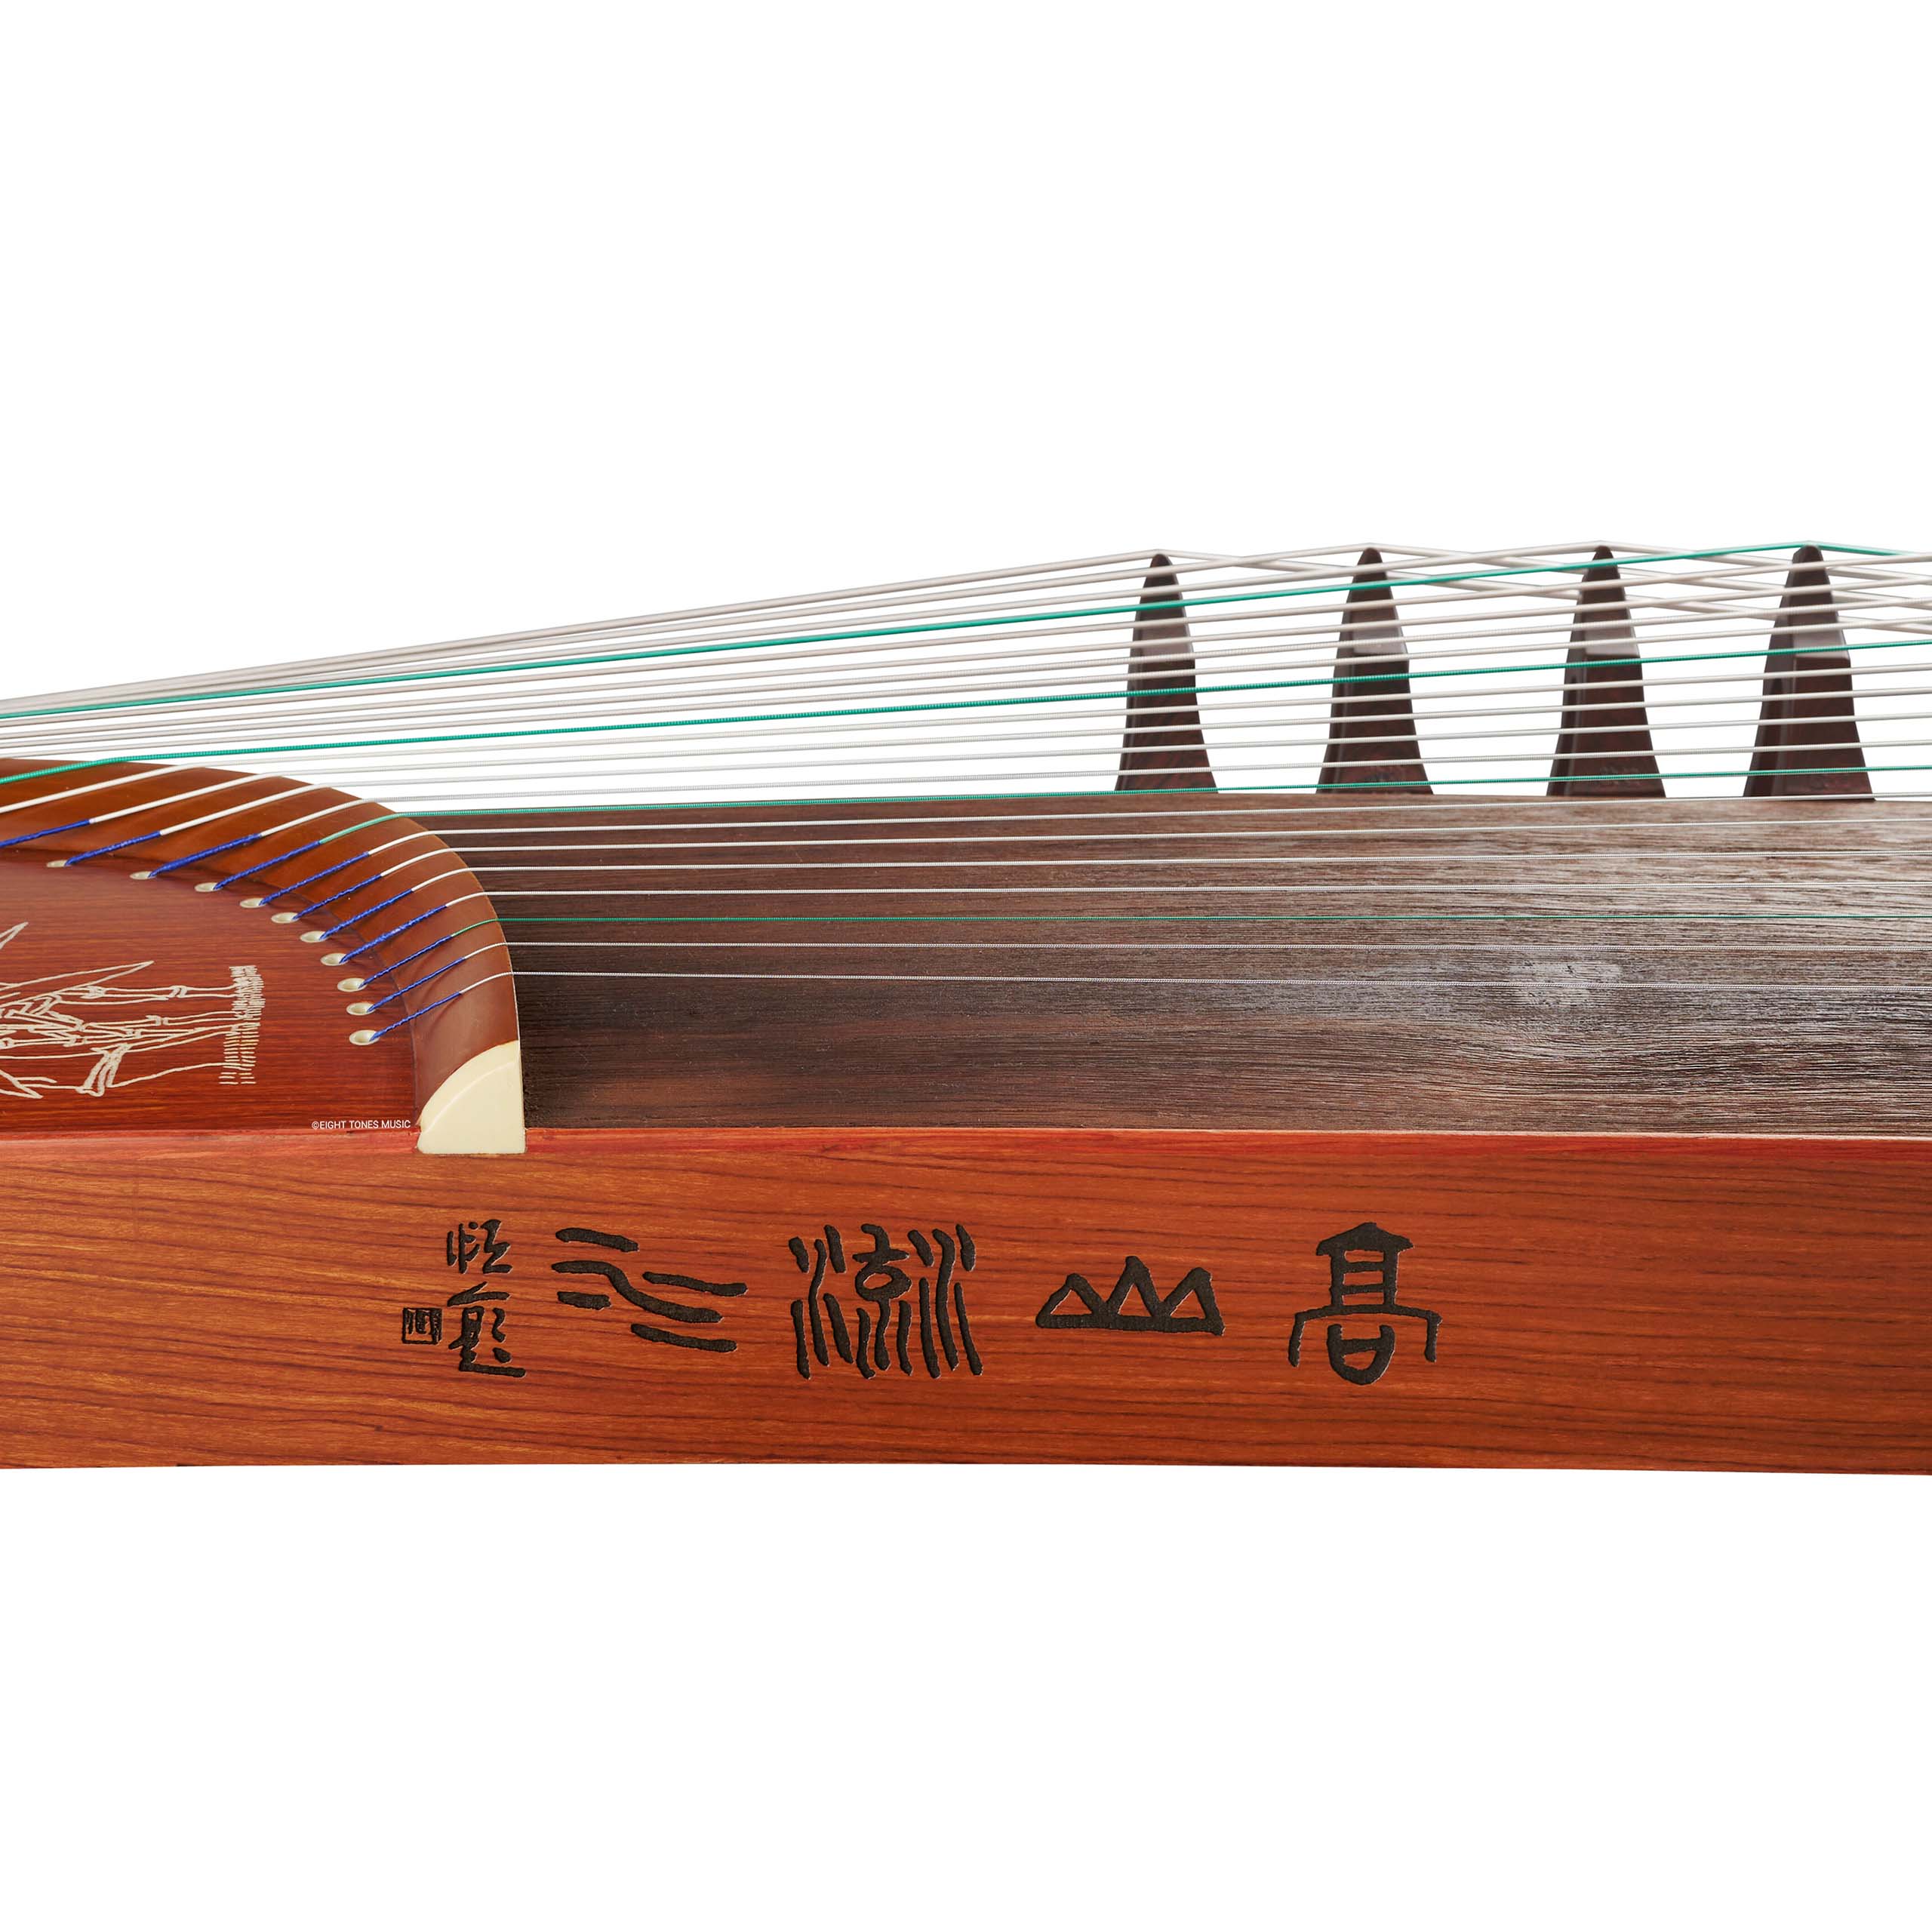 Shanghai No.1 Dunhuang 689E Bamboo Garden Guzheng Sideboard